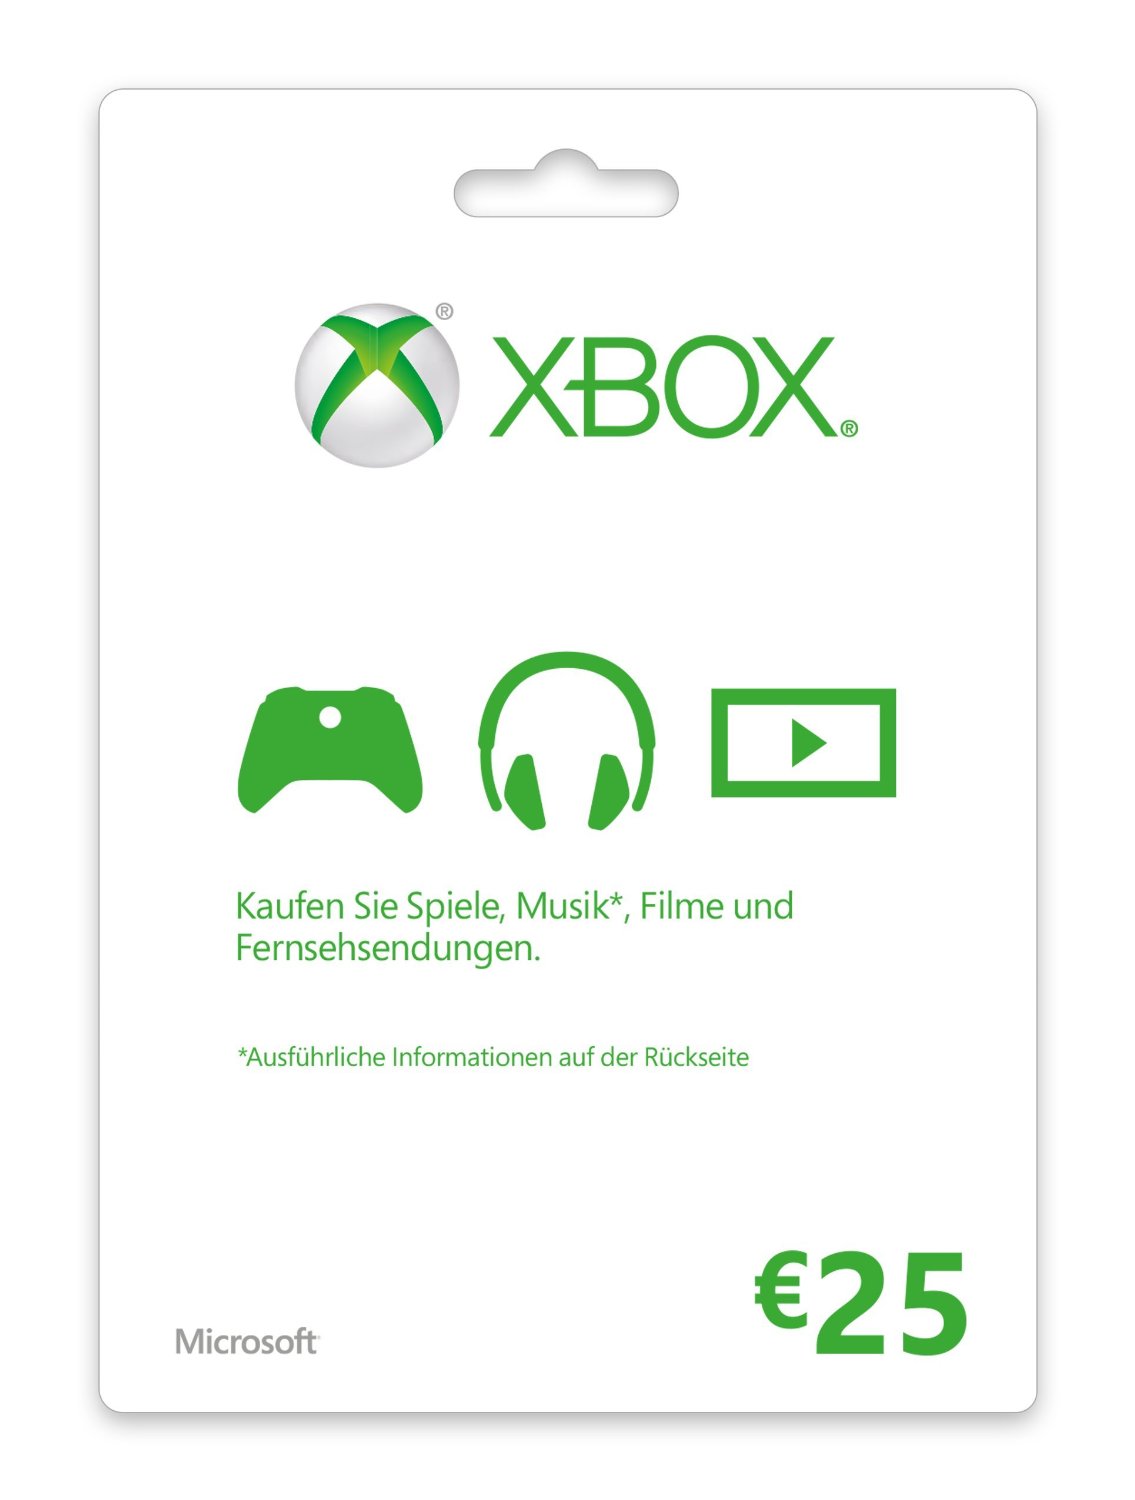 Verdorie Transparant credit Xbox Live Guthaben 25 Euro Card online kaufen - Code sofort per Email